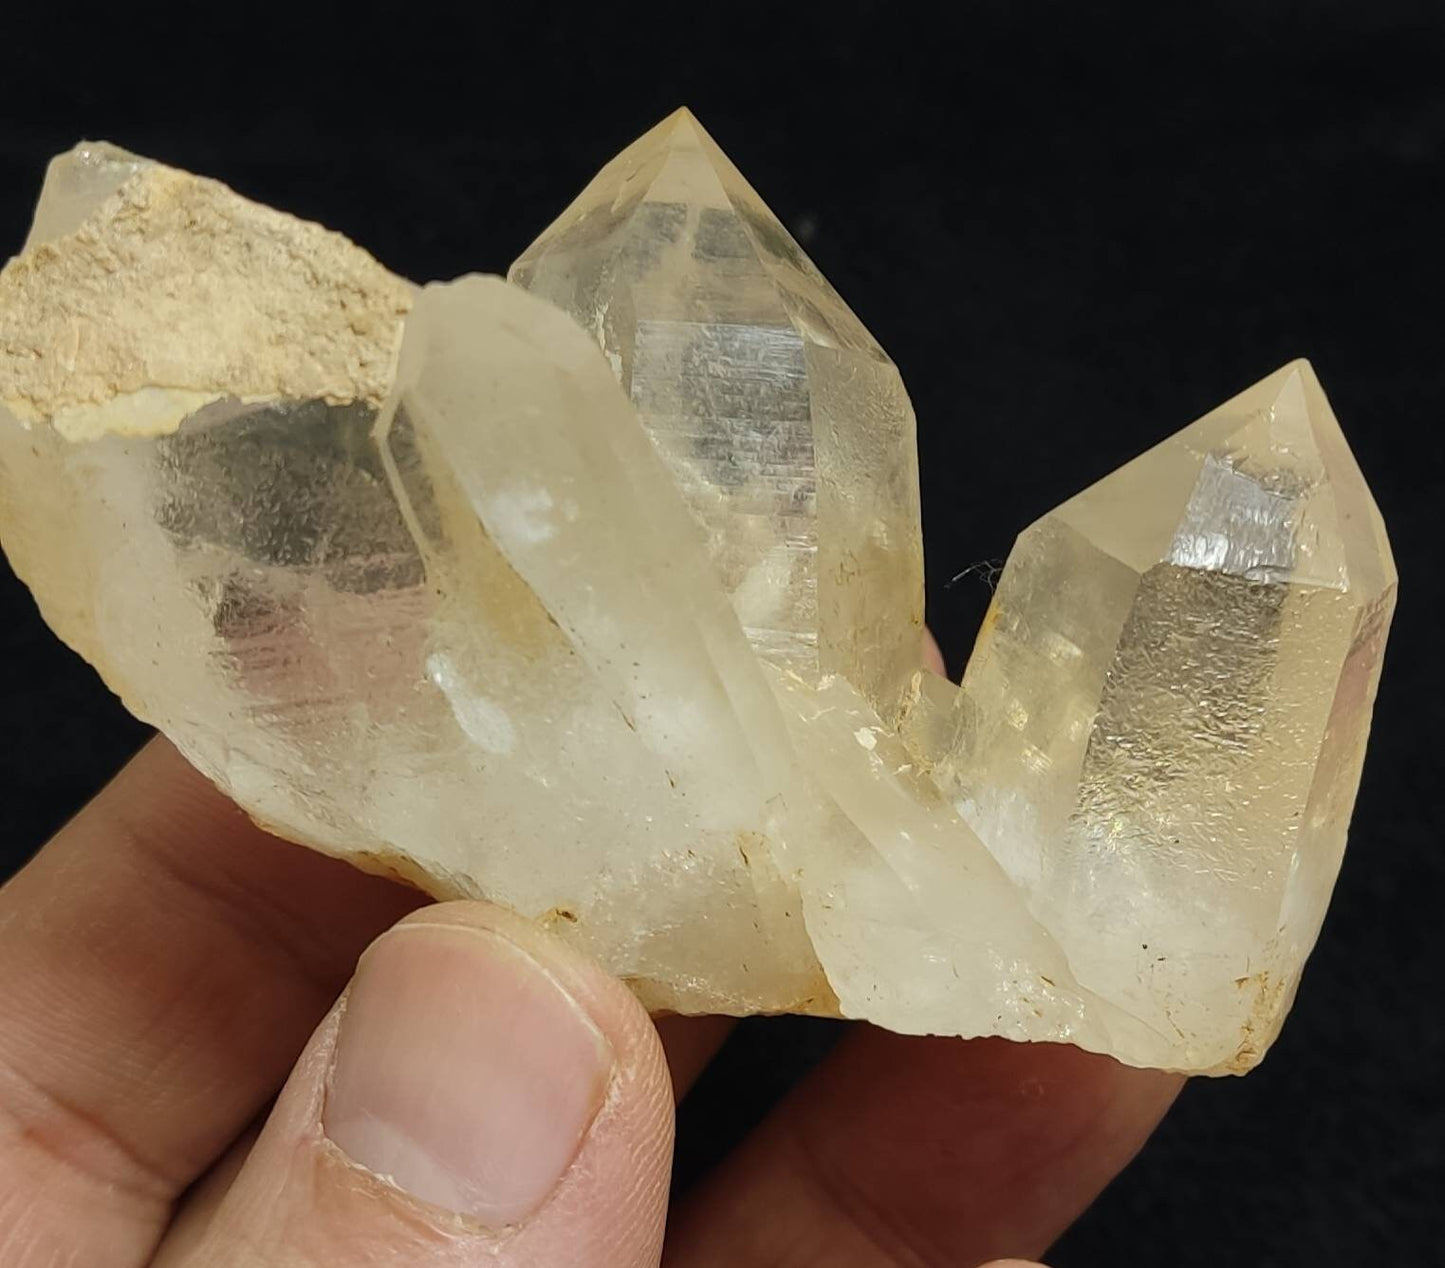 Aesthetic quartz crystals cluster 118 grams